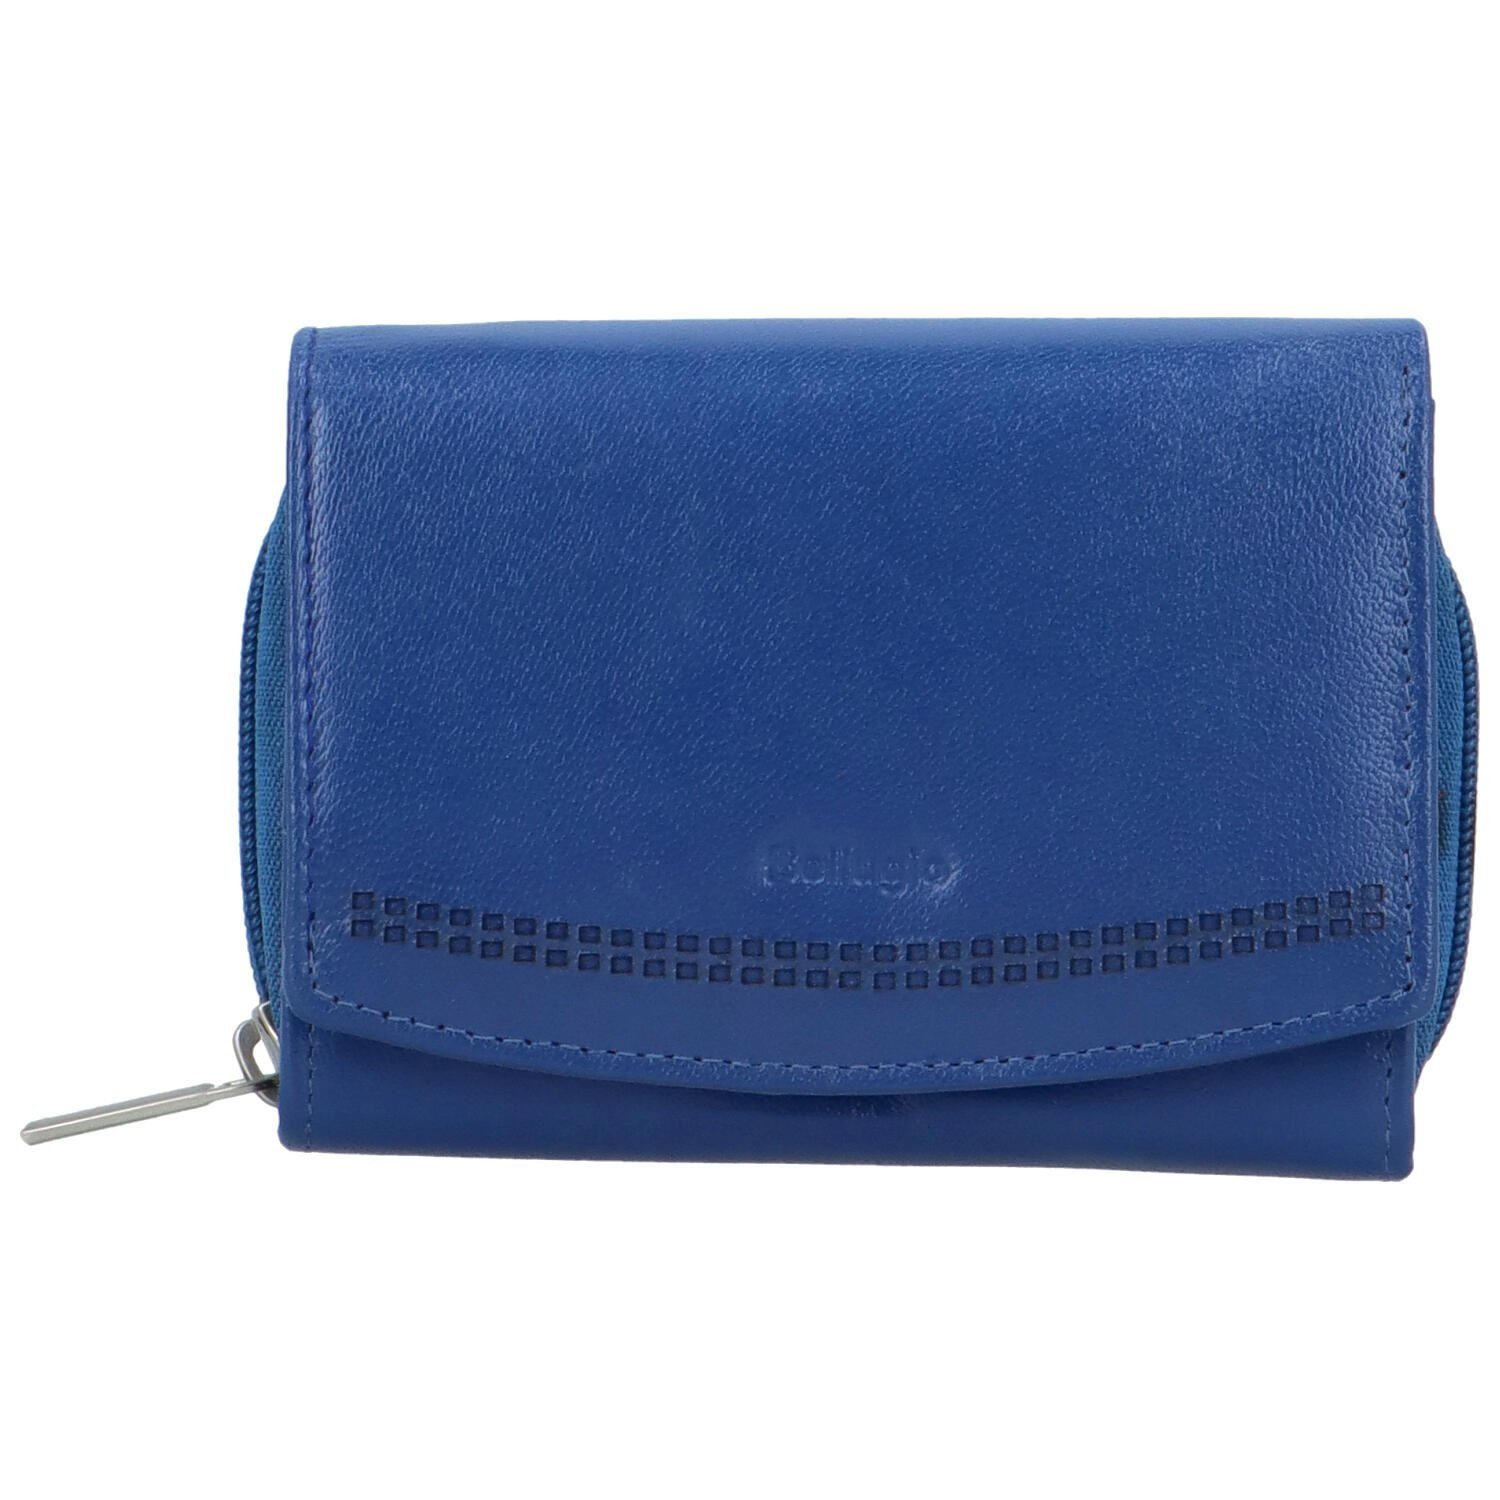 Dámská kožená peněženka tmavě modrá - Bellugio Odetta tmavě modrá